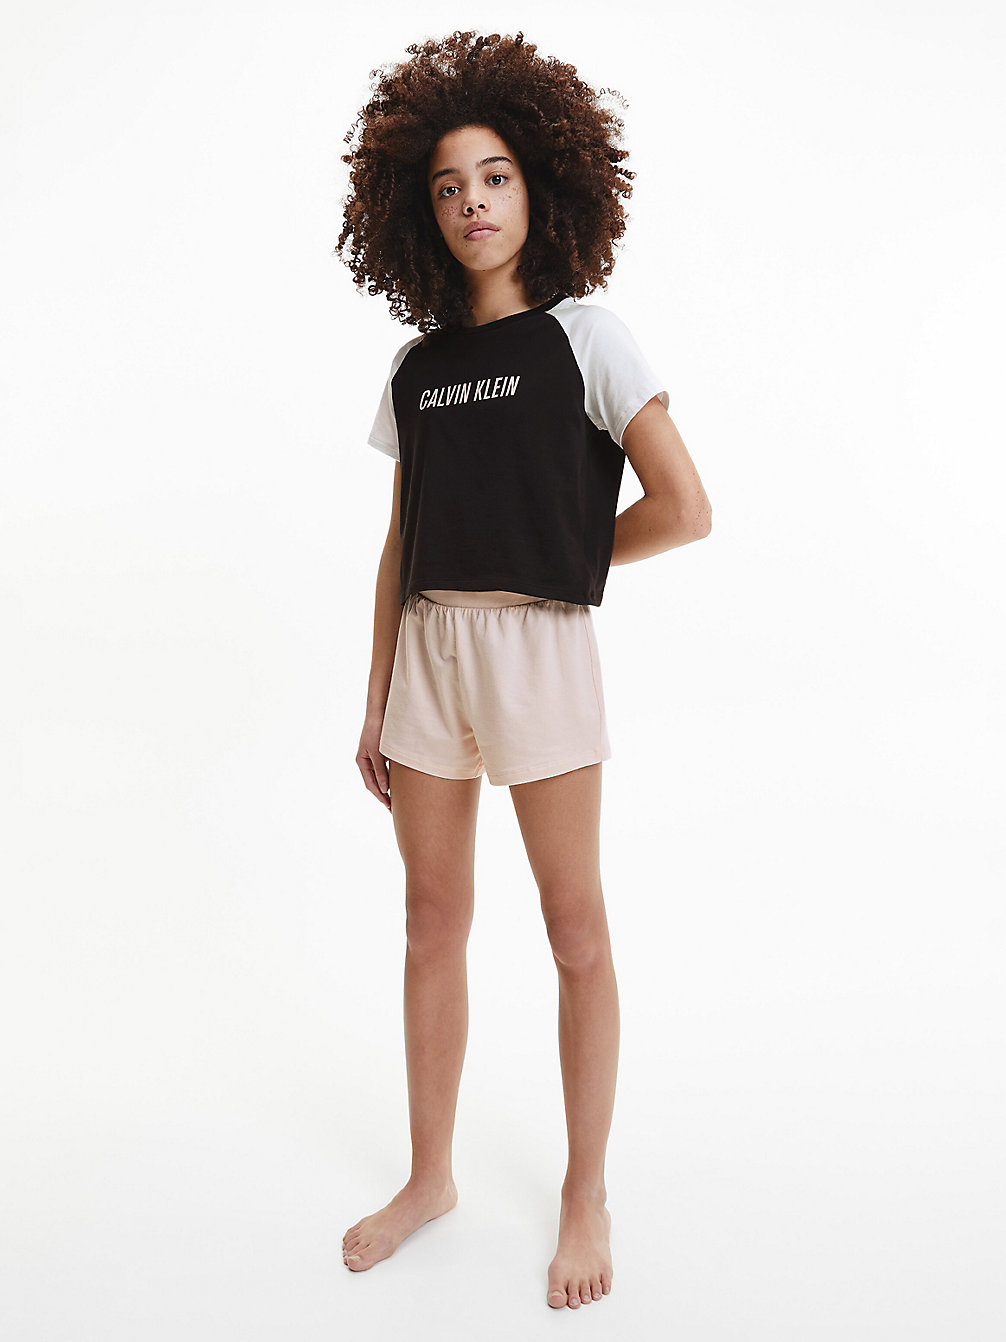 PRETTYPEACH/W/PVHBLACK > Shorts-Pyjama-Set – Intense Power > undefined girls - Calvin Klein